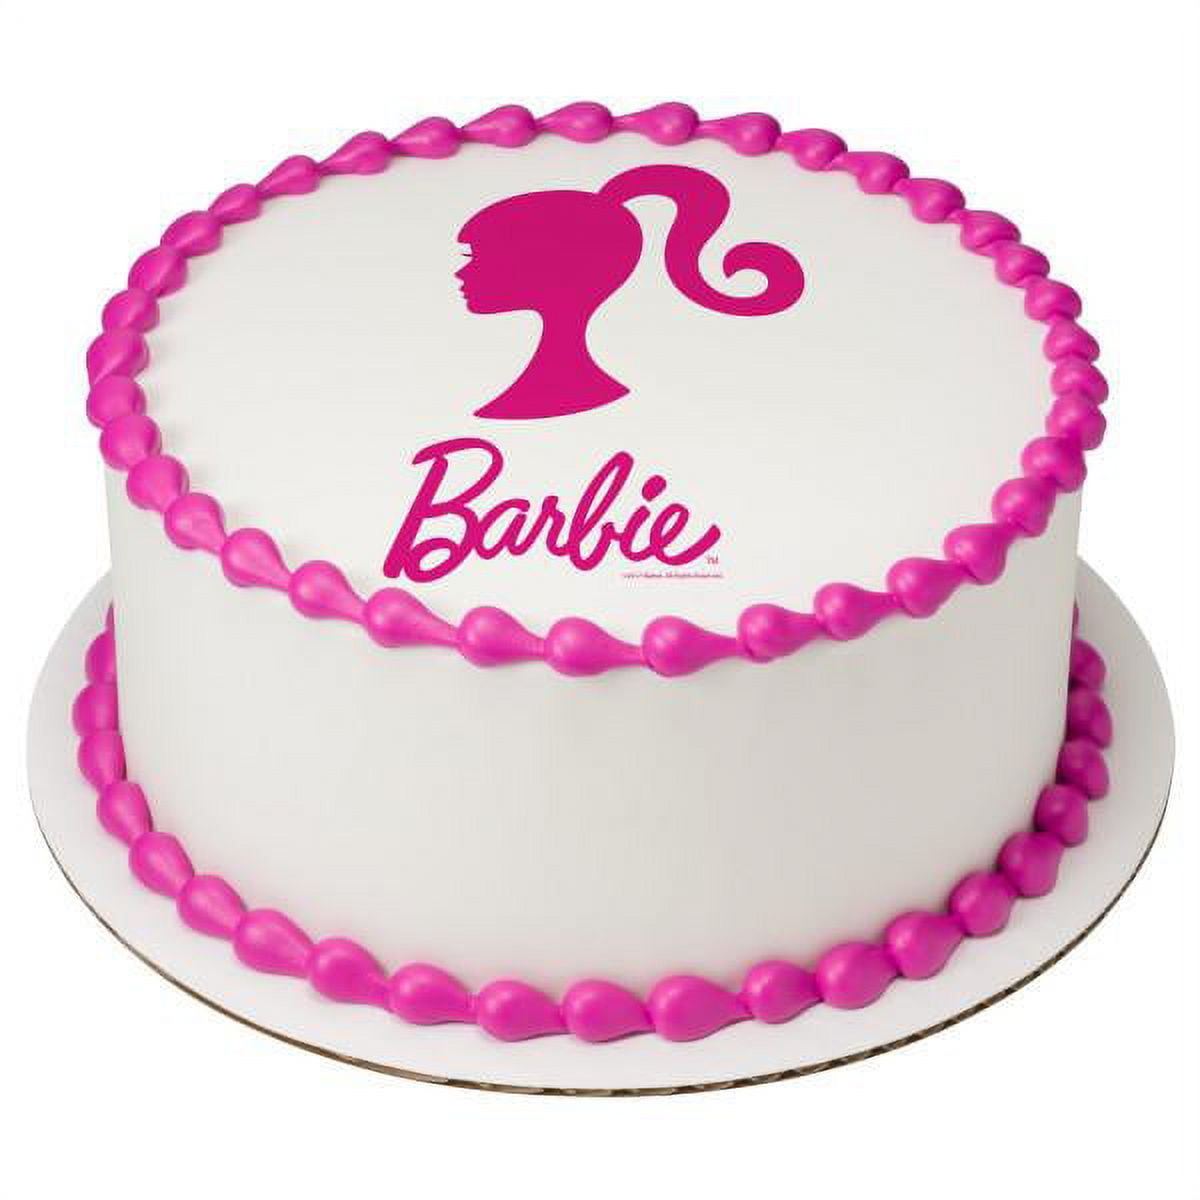 Barbie Cake Topper - Etsy